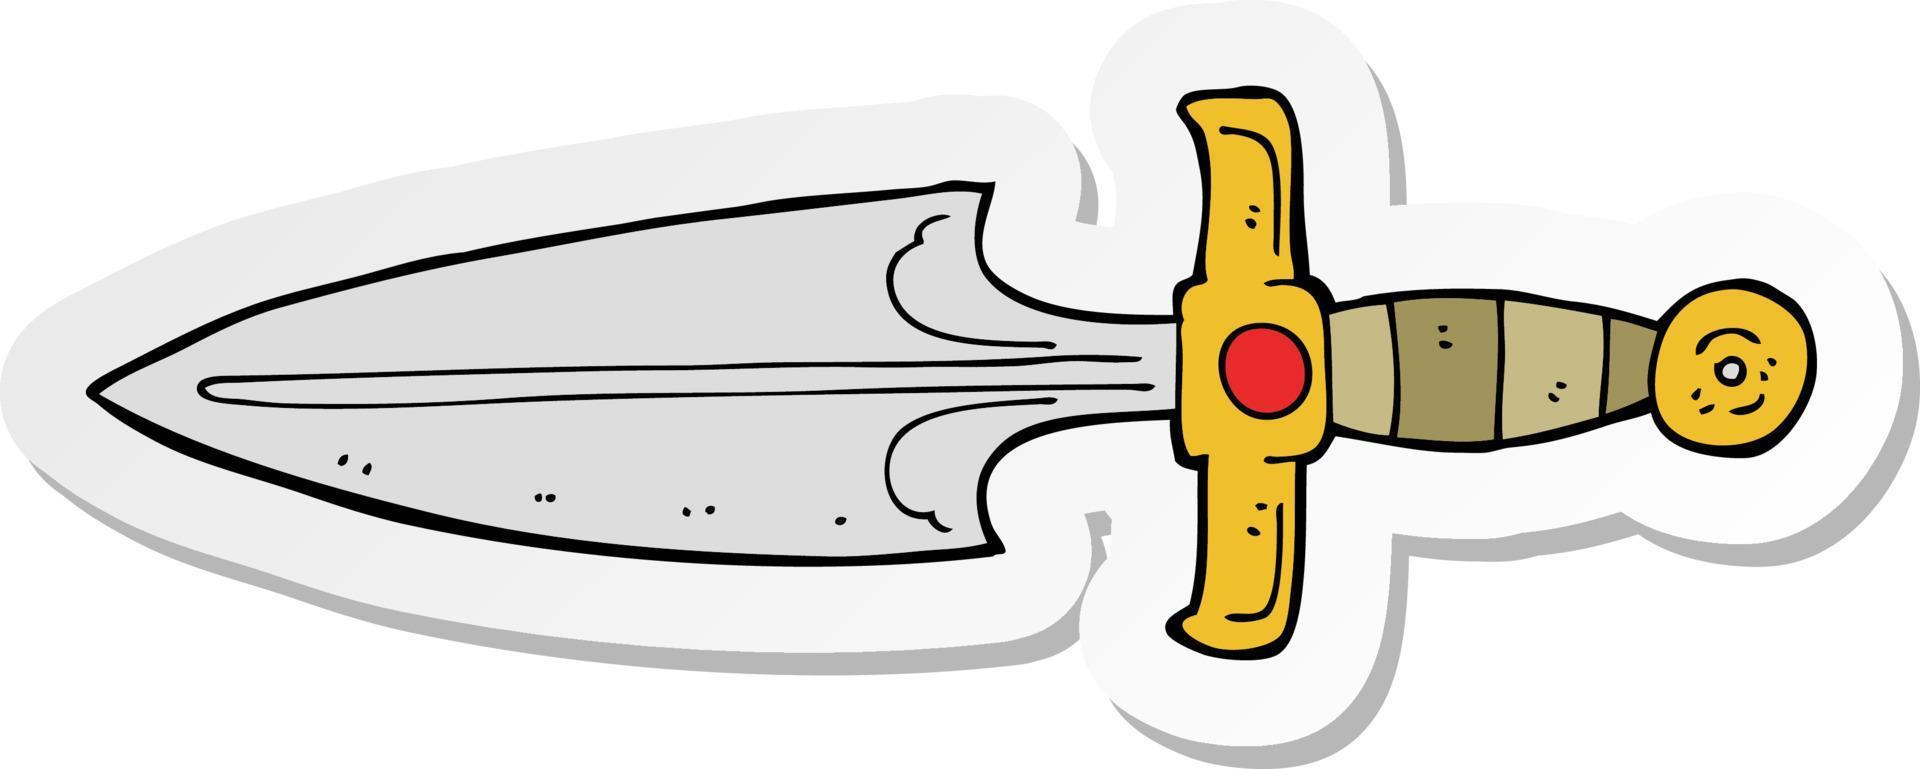 sticker of a cartoon dagger vector